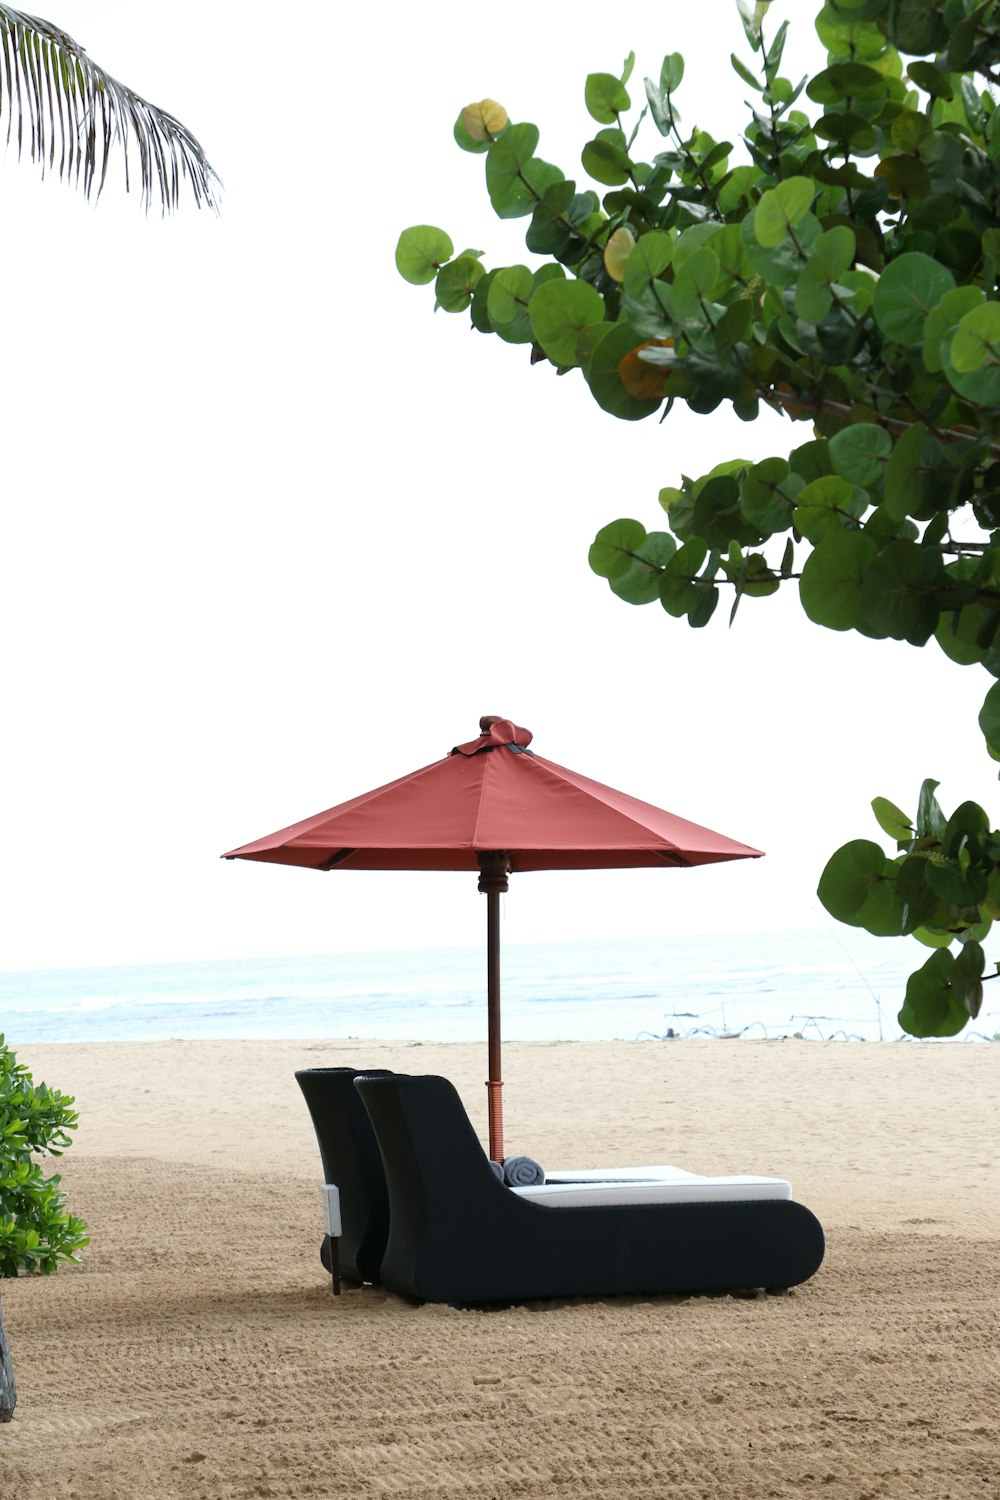 모래 사장 위에 앉아있는 빨간 우산